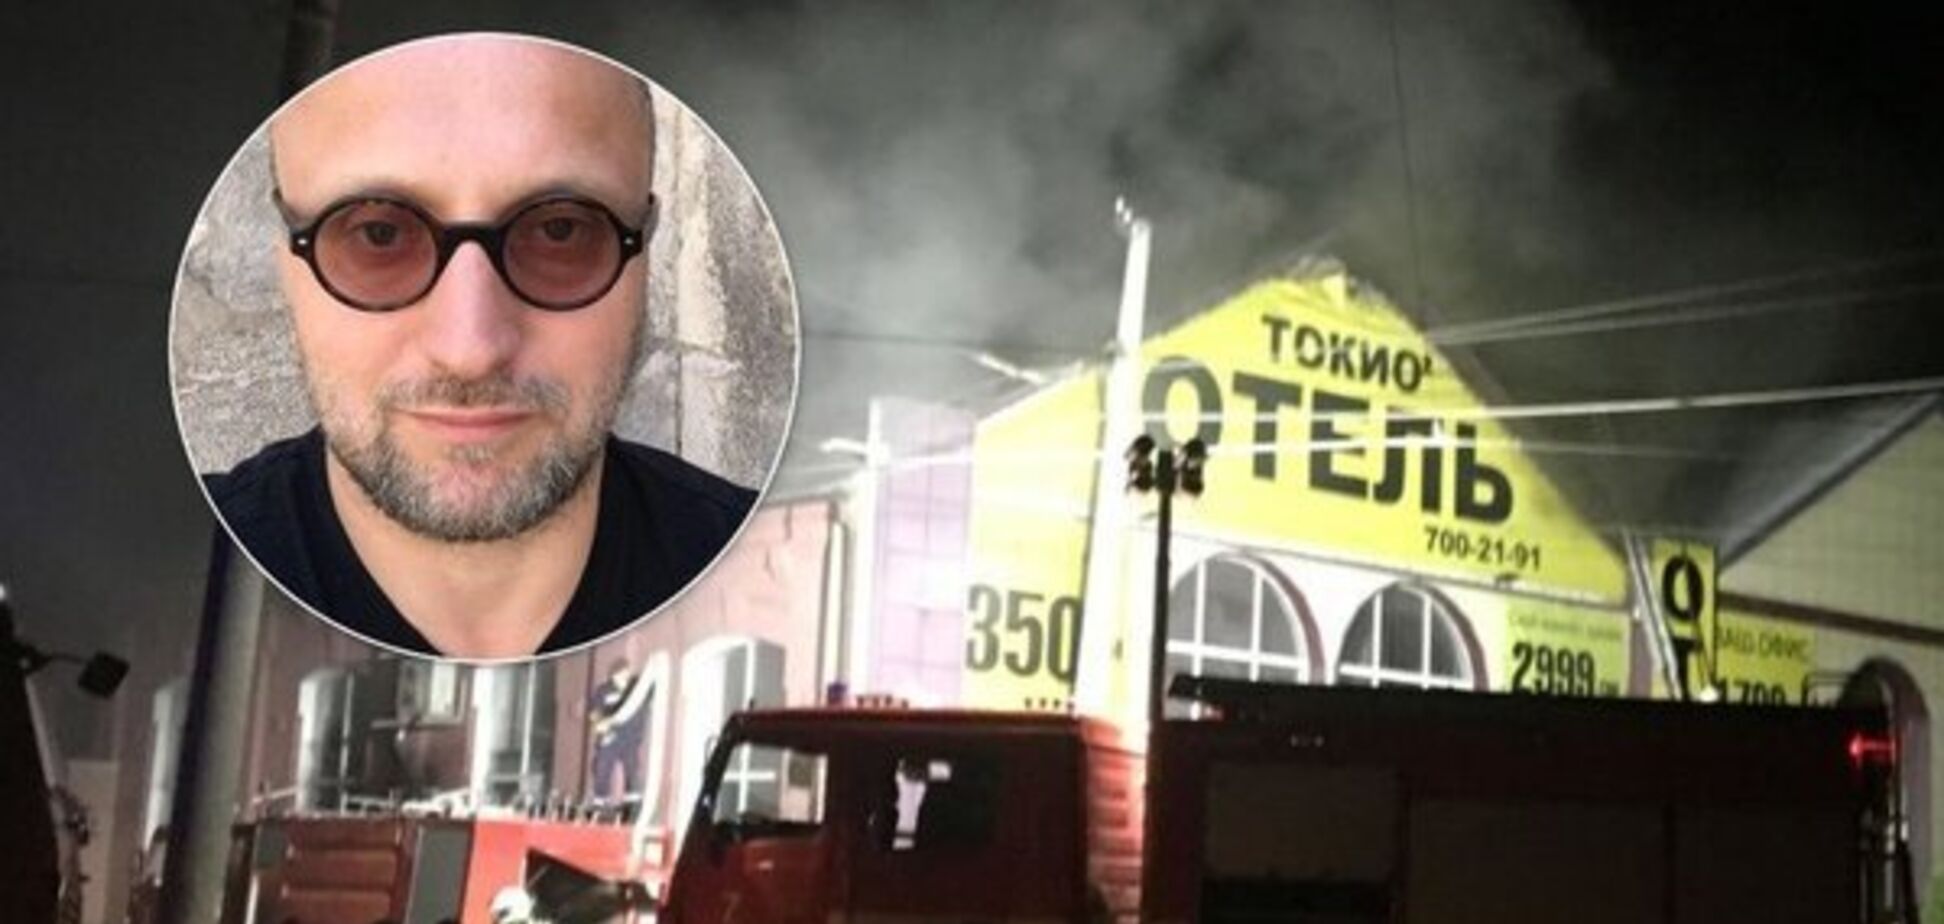 'Ну, б**, буває': знайшовся блог власника згорілого 'Токіо Стар' про пожежу в 'Вікторії' та Кемерово